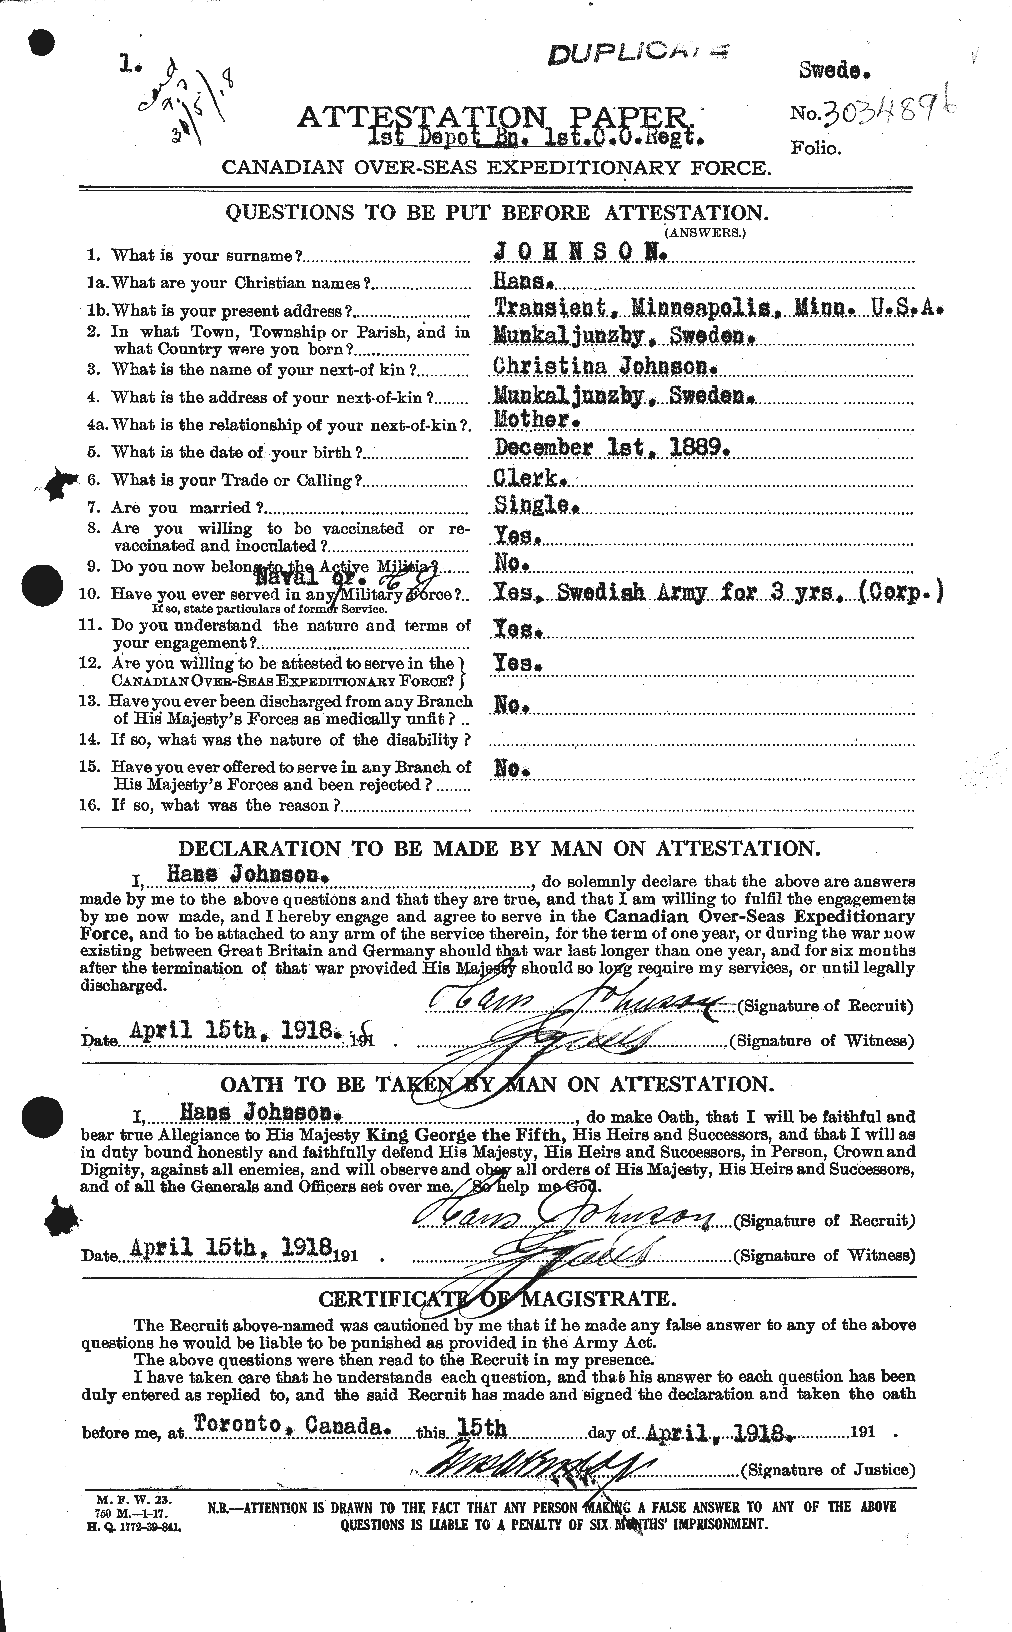 Dossiers du Personnel de la Première Guerre mondiale - CEC 420409a